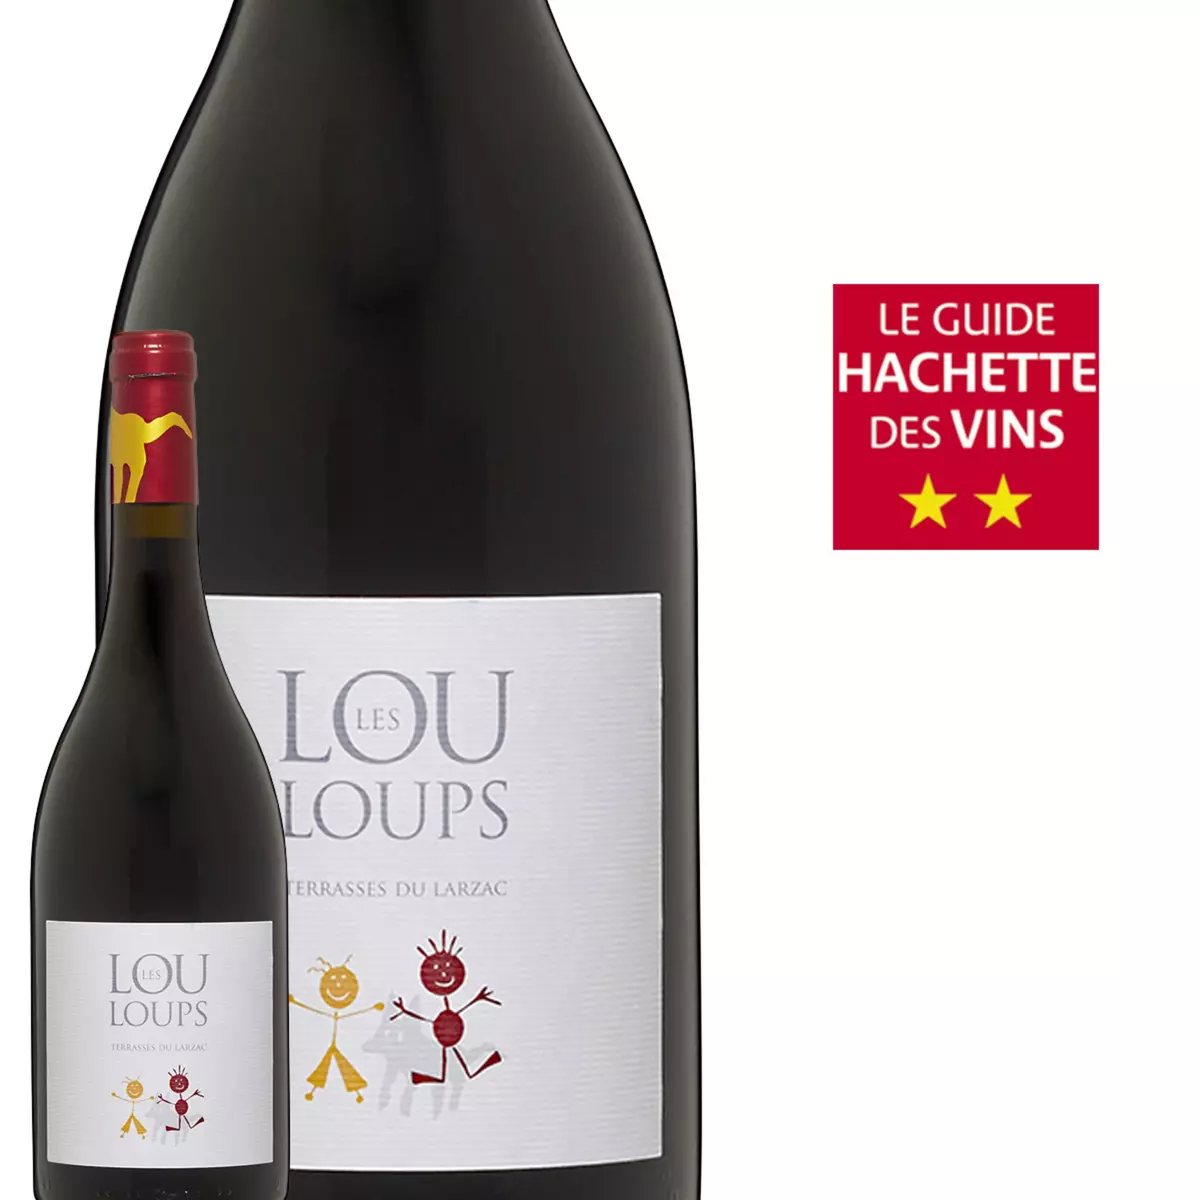 Les Louloups Le Clos du Lucquier Terrasses du Larzac Rouge 2014